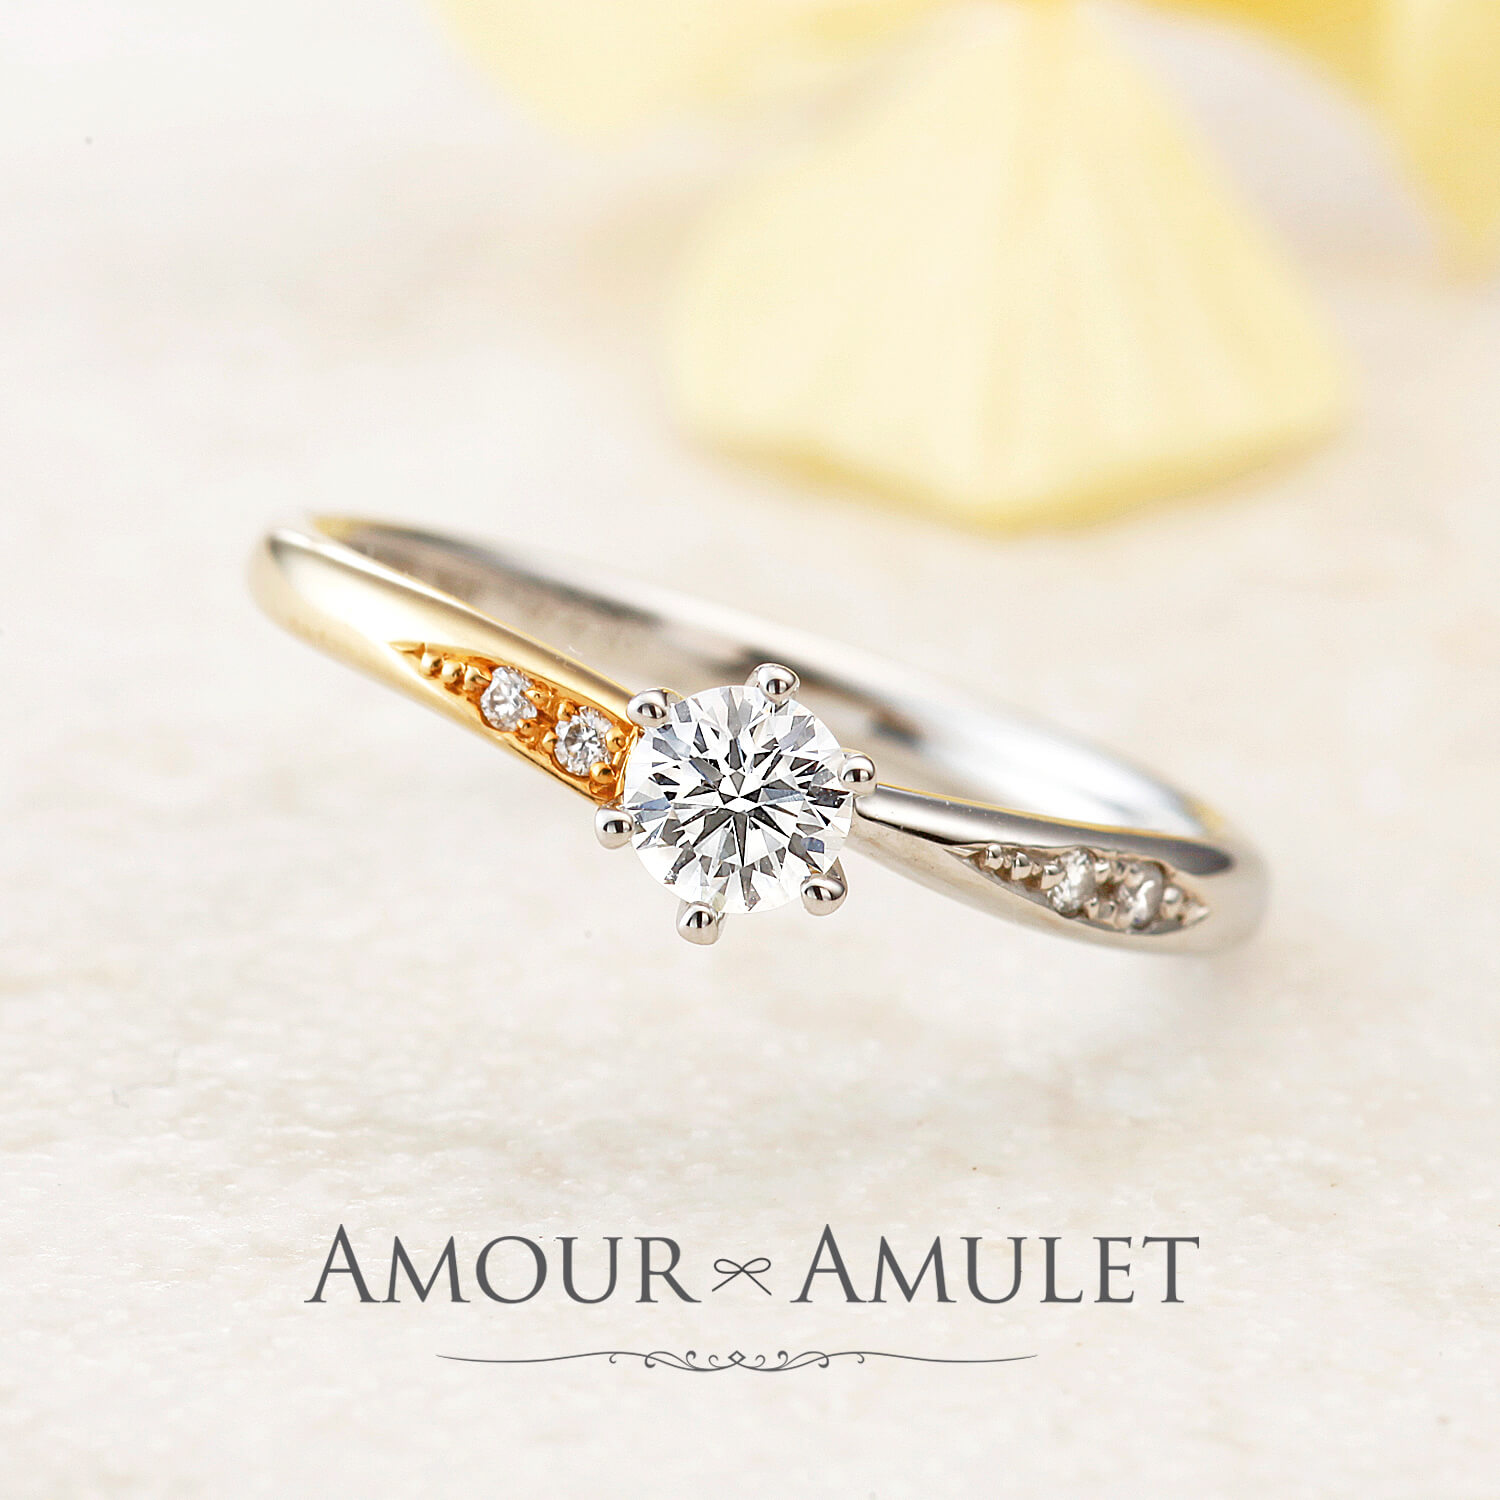 AMOURAMULETアムールアミュレットの婚約指輪INFINITEアンフィニテ